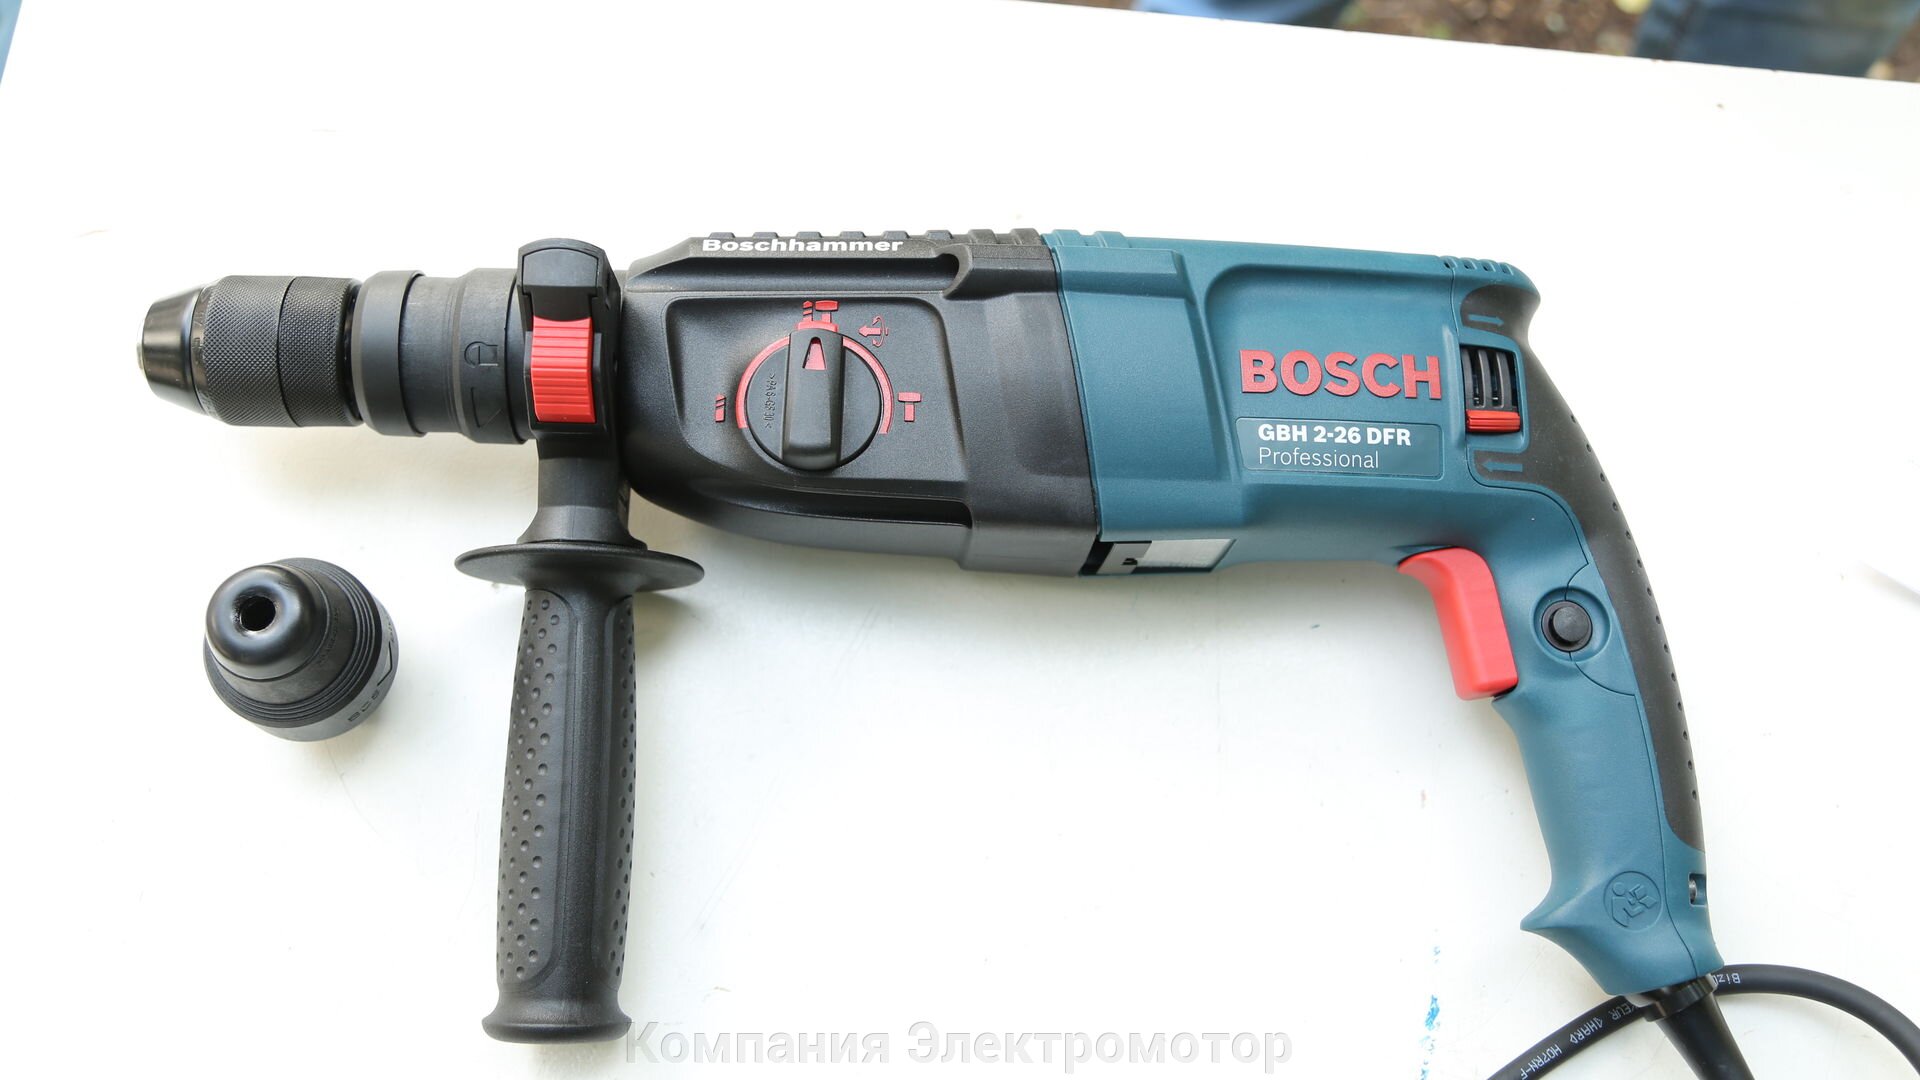 Аналог перфоратора. Bosch GBH 2-26 DFR. Перфоратор Bosch 2-26 DFR. Перфоратор Bosch GBH 2600 DFR. Перфоратор Bosch GBH 3-28 DFR.